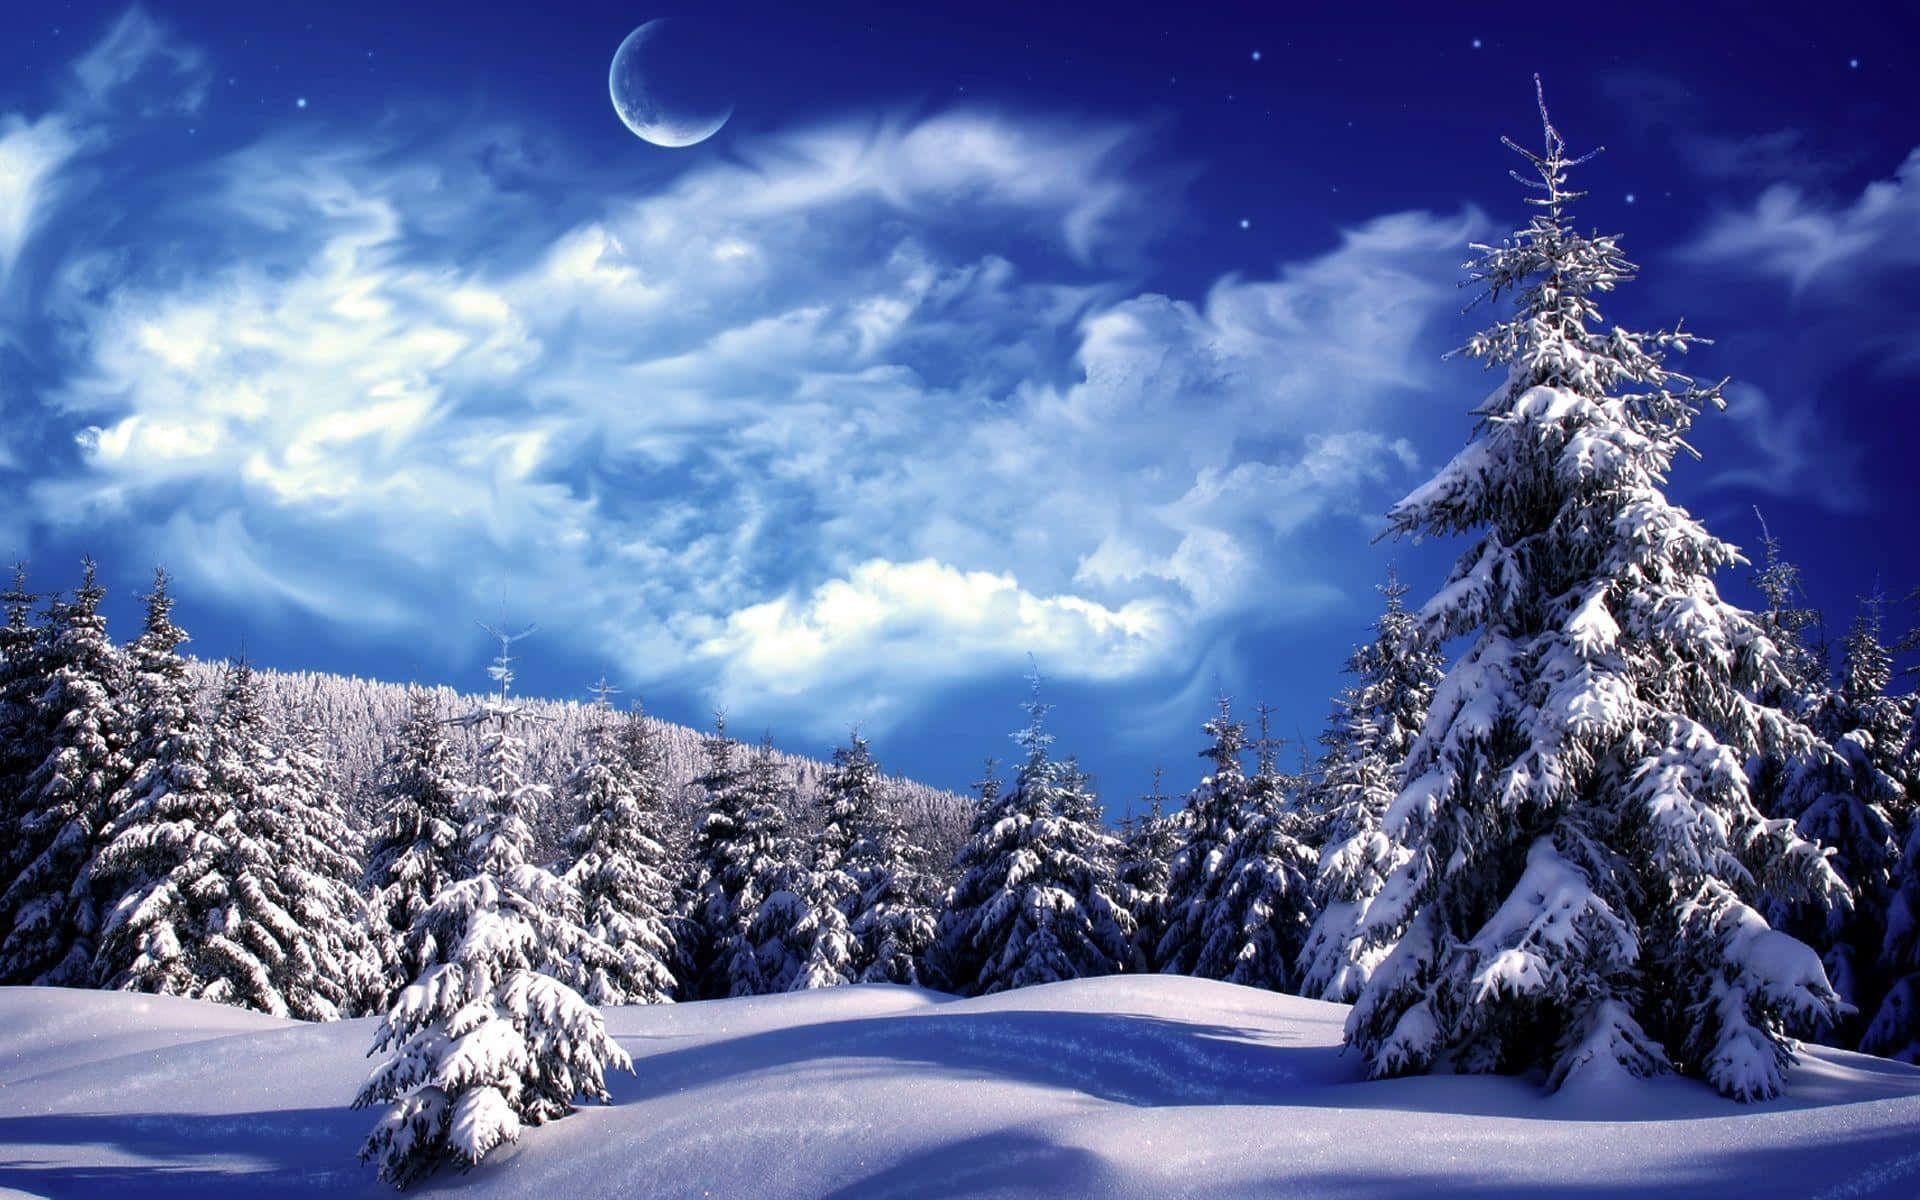 Apreciea Beleza De Um Mundo De Inverno.